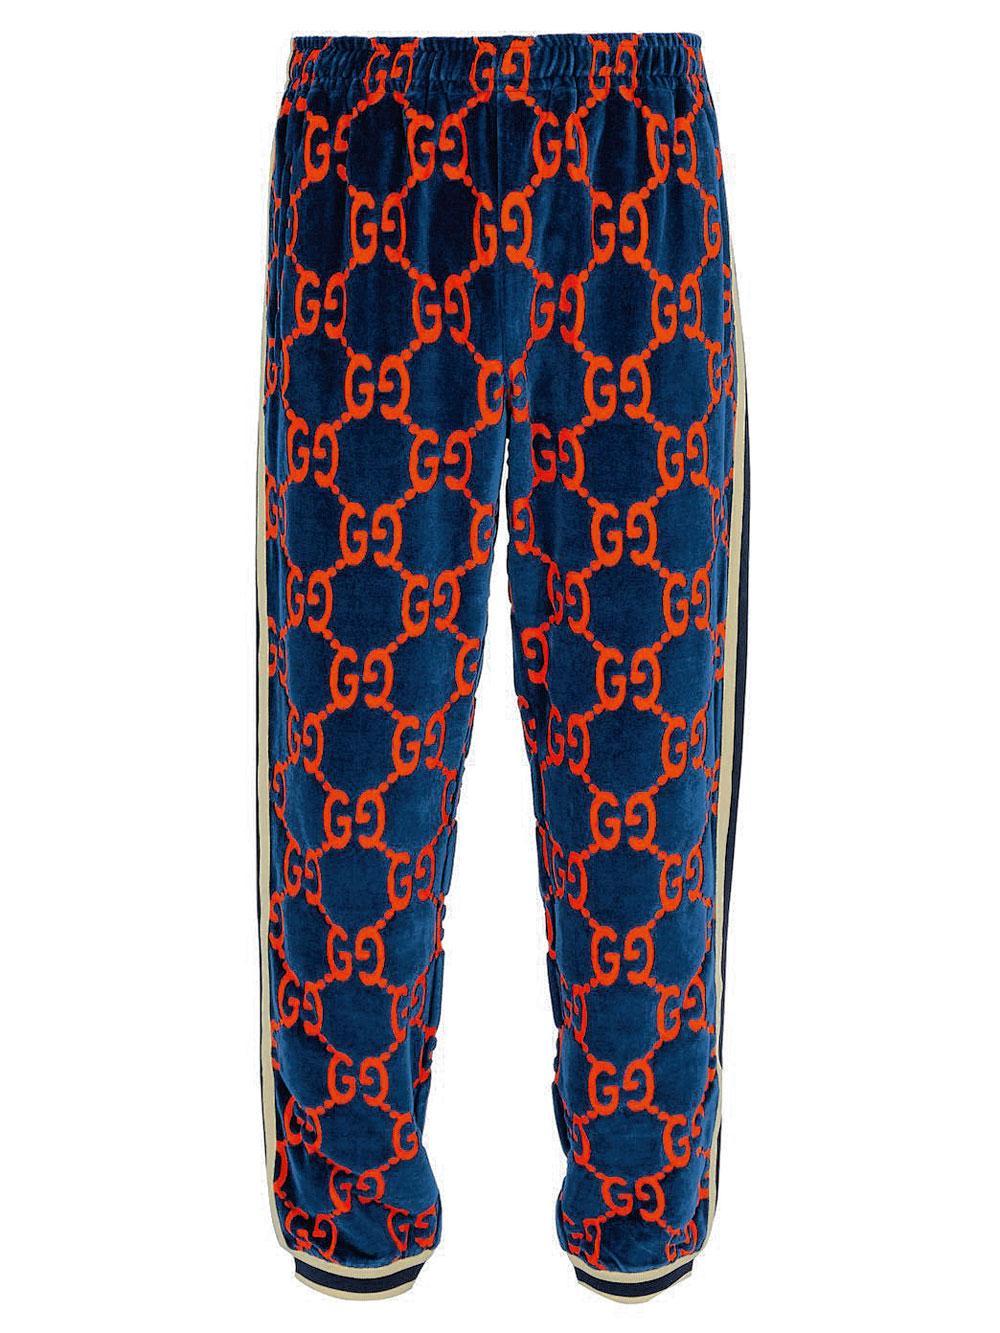 Pantalon de jogging en coton, Gucci, 950 euros.